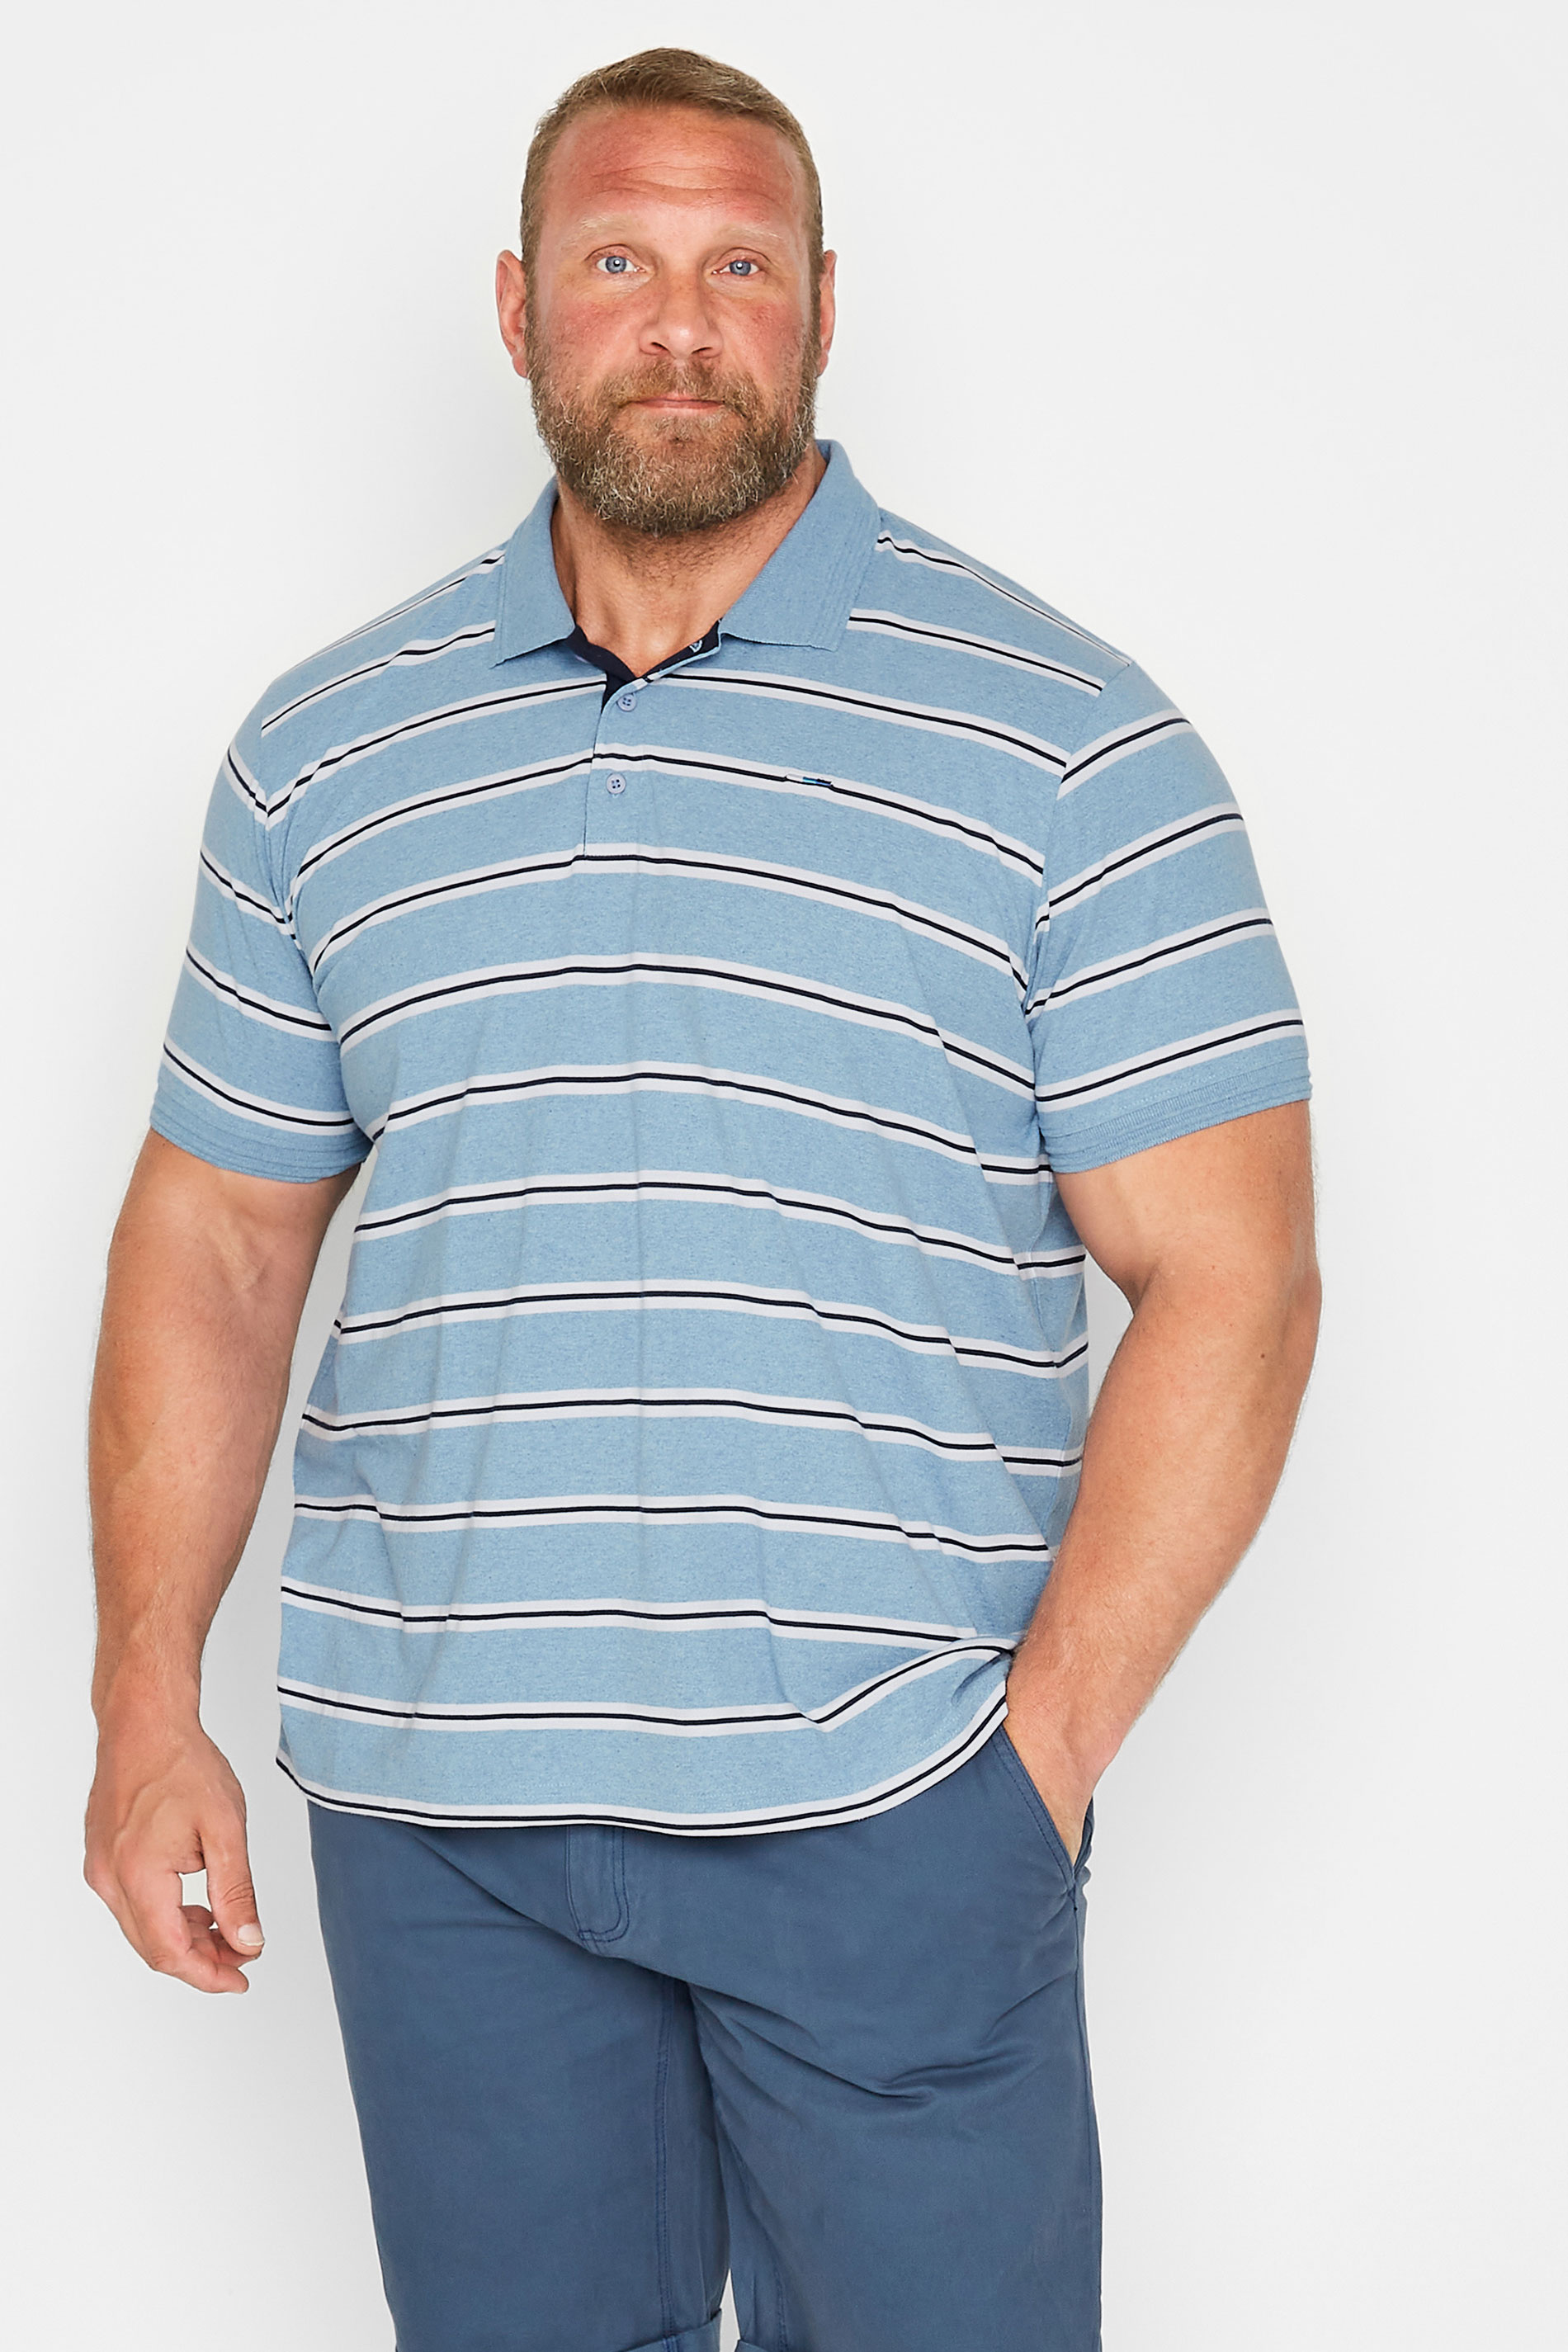 BadRhino Big & Tall Light Blue Stripe Print Polo Shirt | BadRhino 1